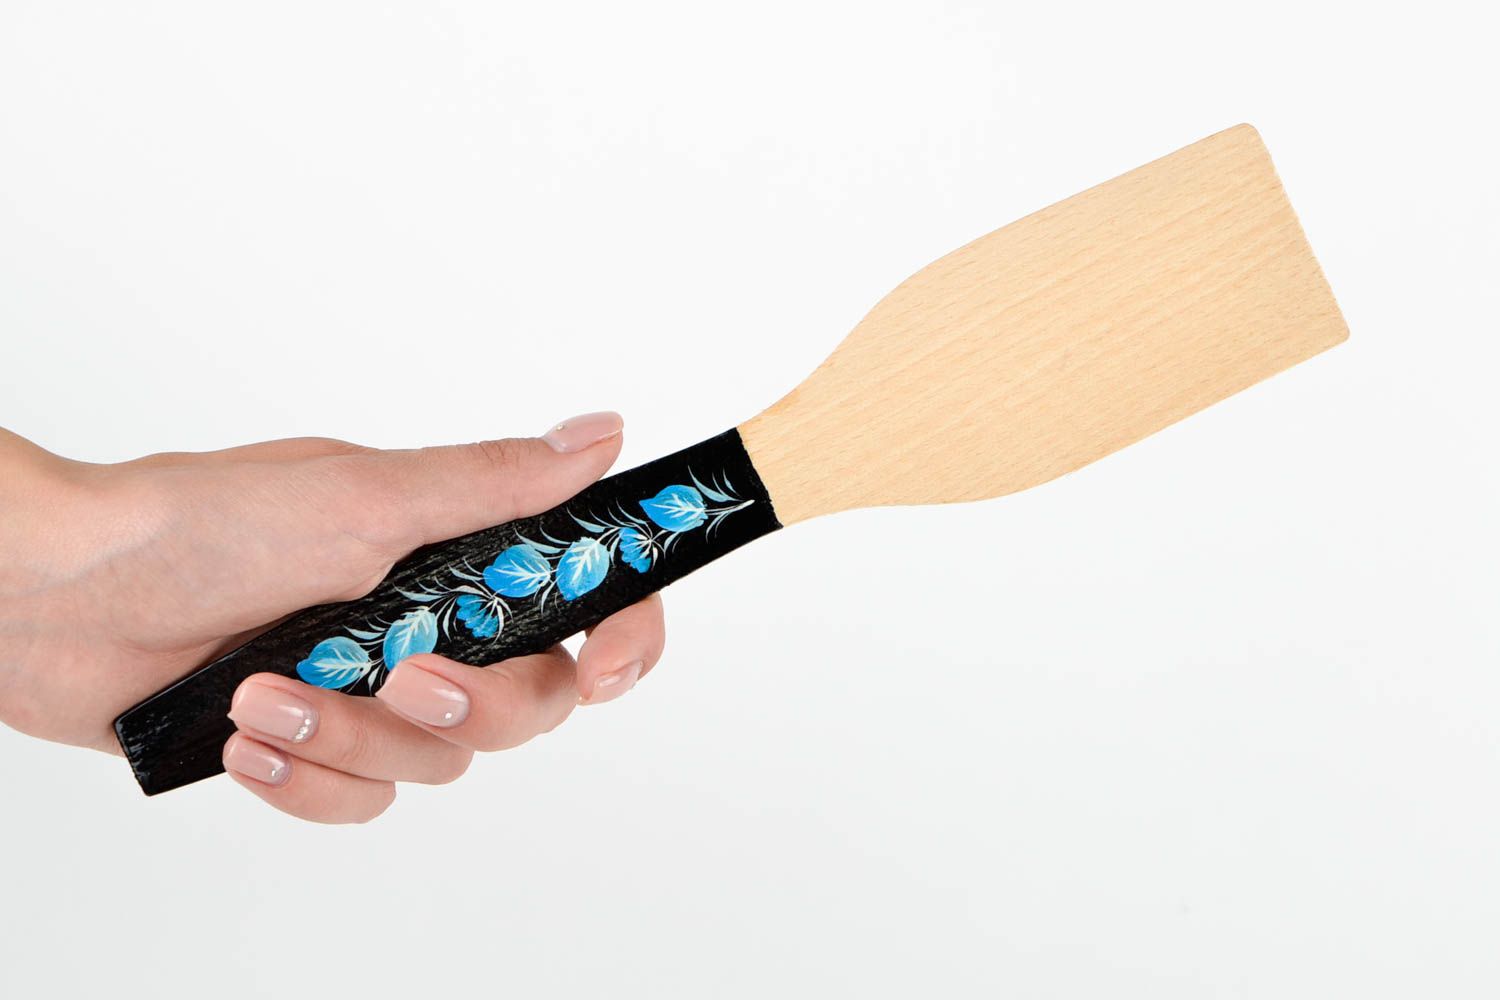 Handmade beautiful wooden spatula stylish kitchen utensil cute kitchen accessory photo 2